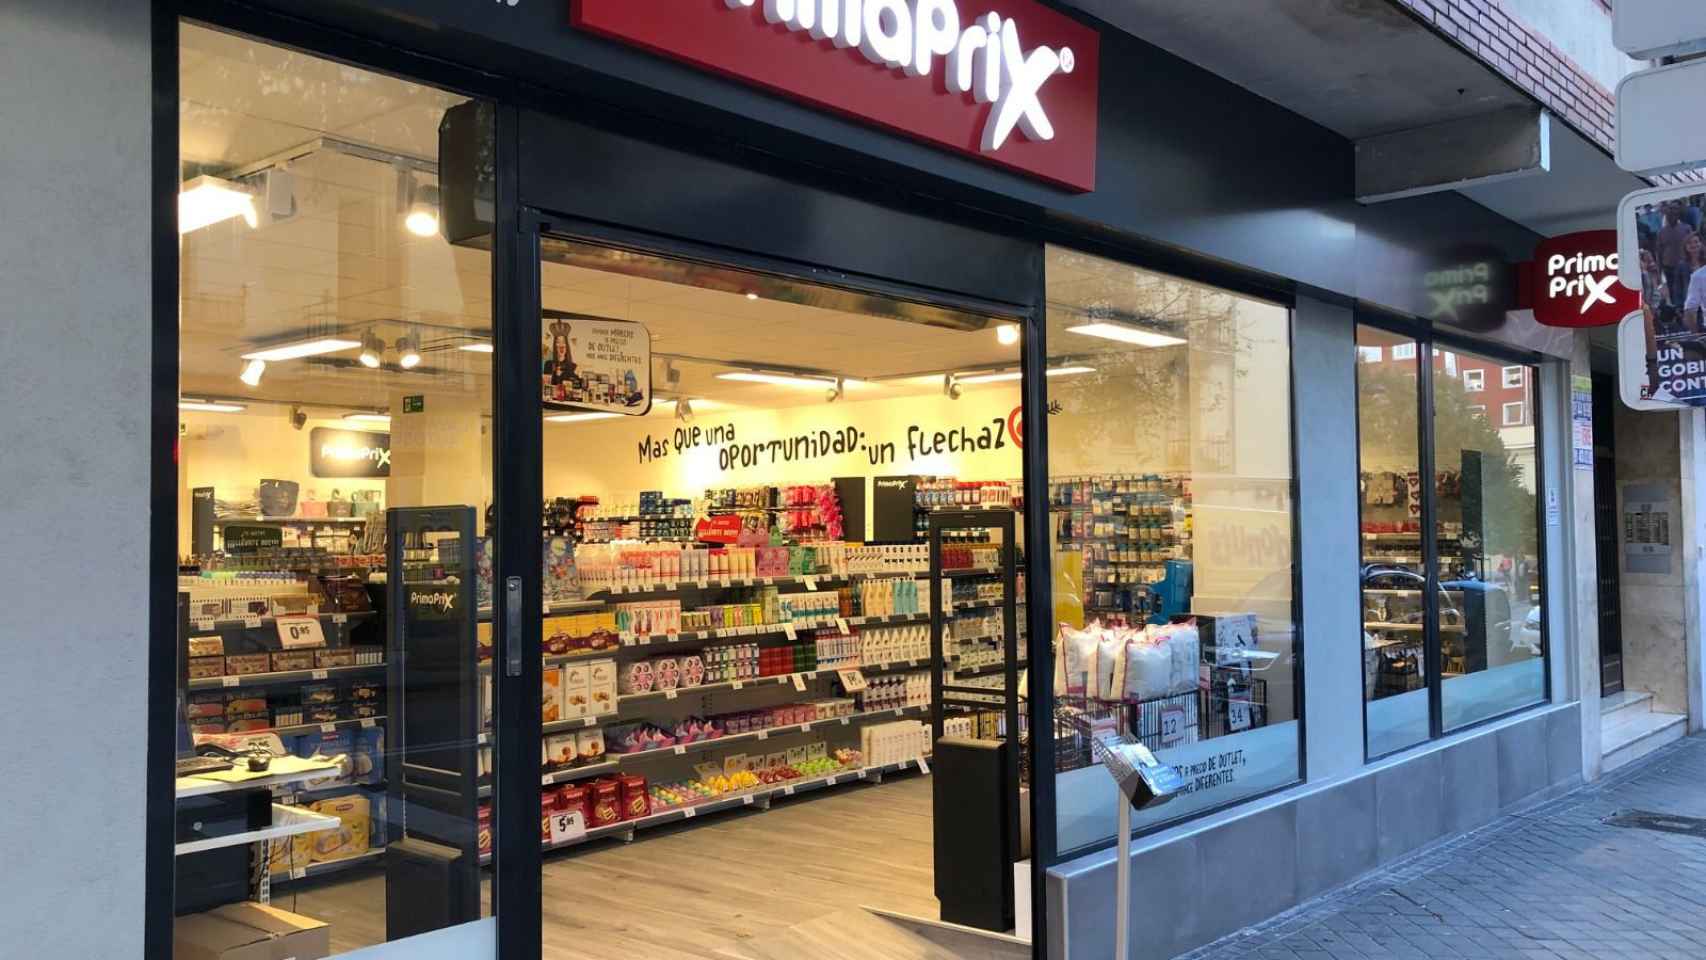 Entrada de un supermercados de Primaprix como el que ha abierto en Barcelona / PRIMAPRIX